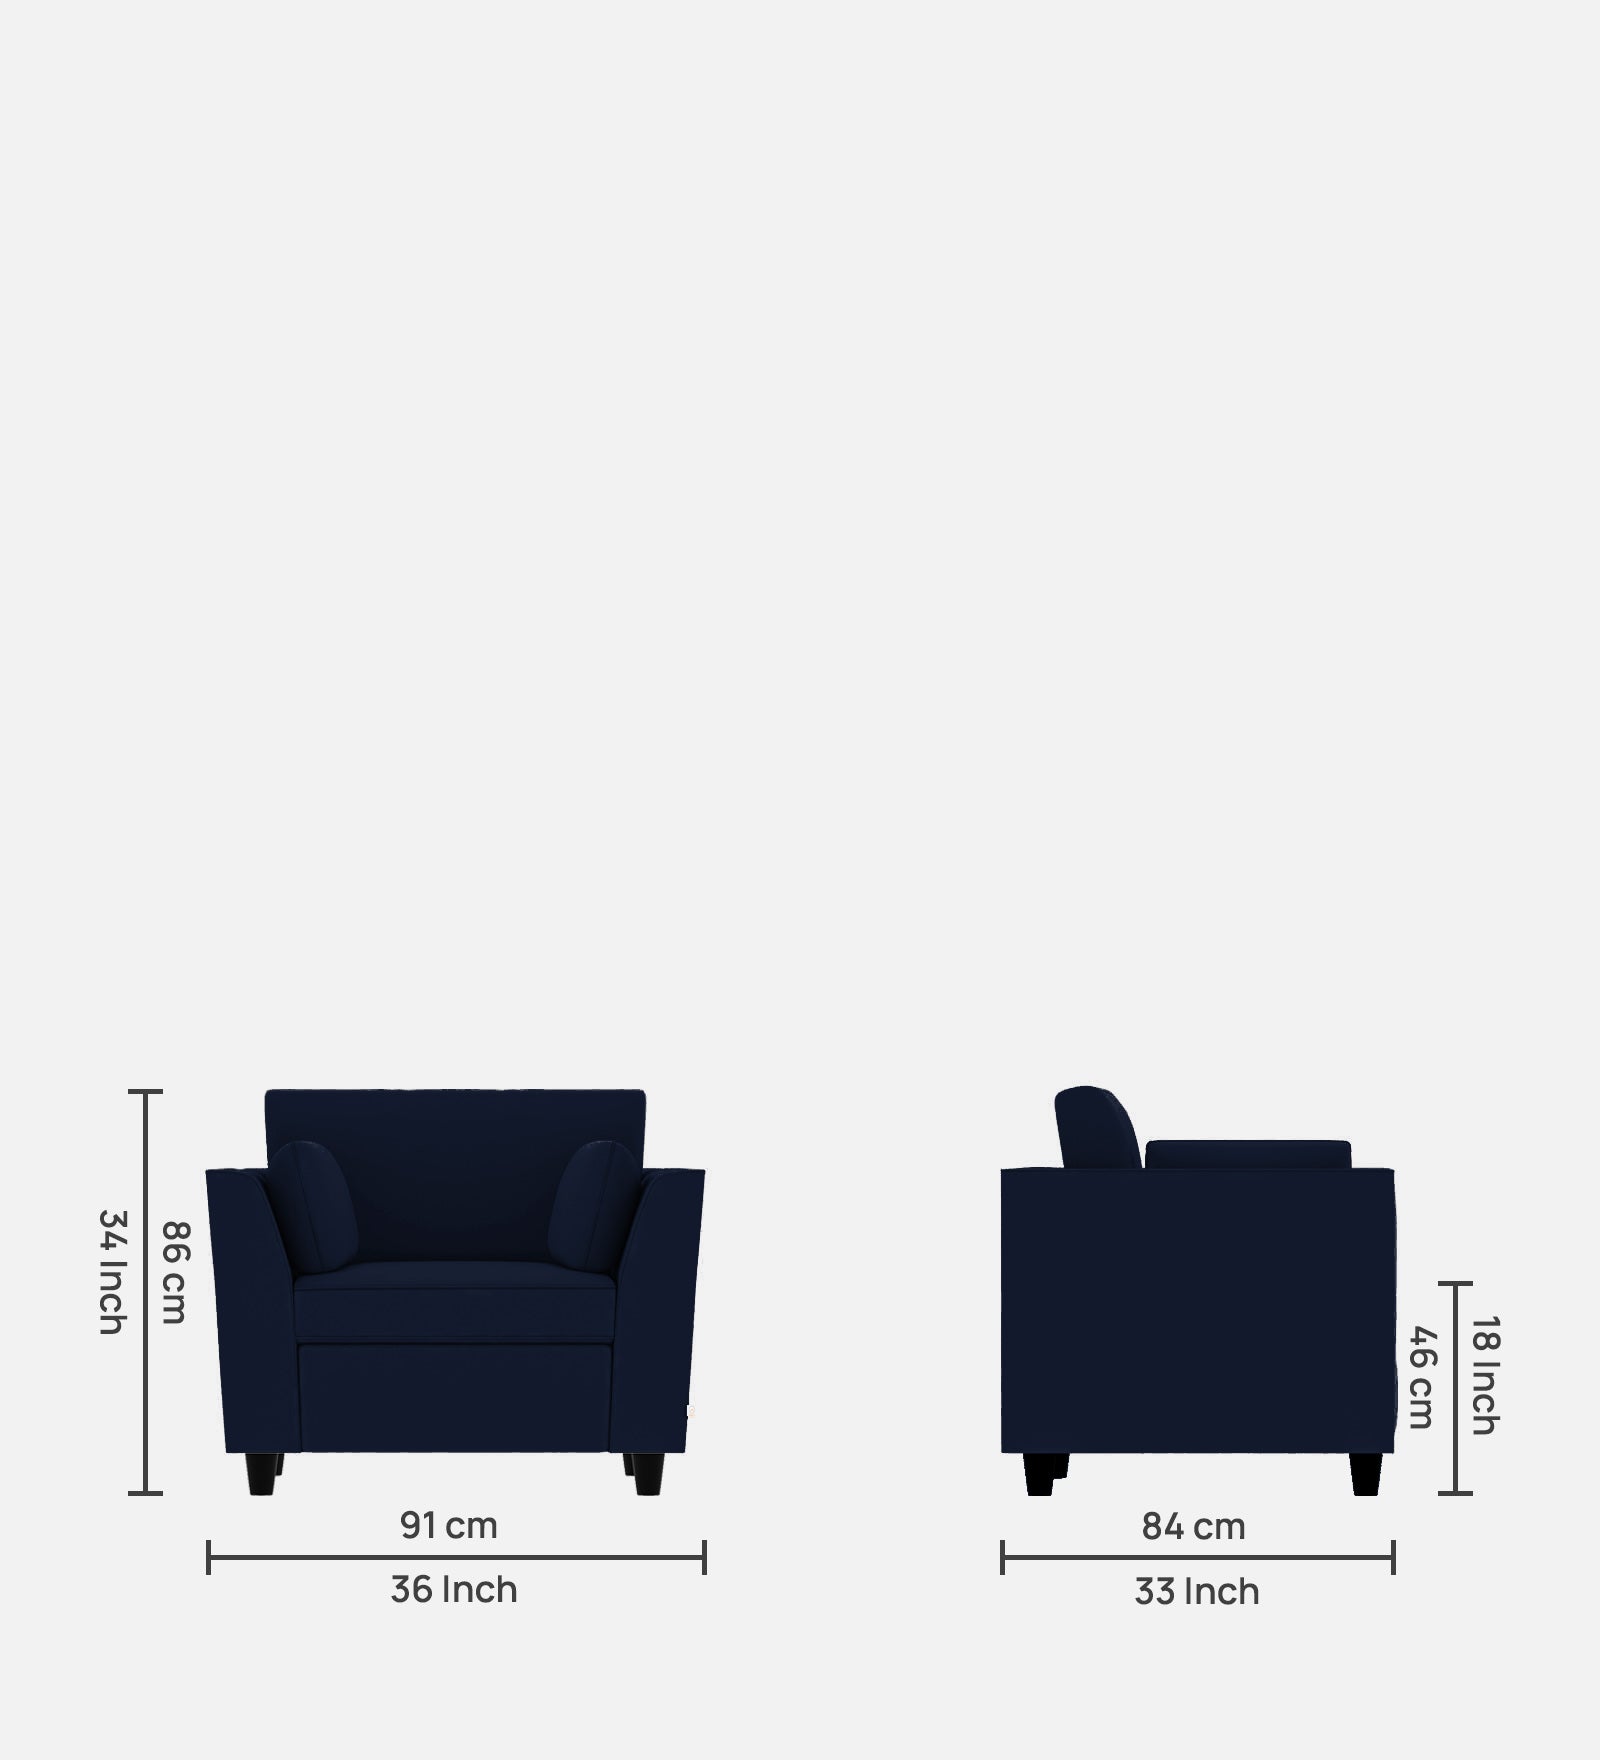 Bristo Velvet 1 Seater Sofa in Indigo Blue Colour